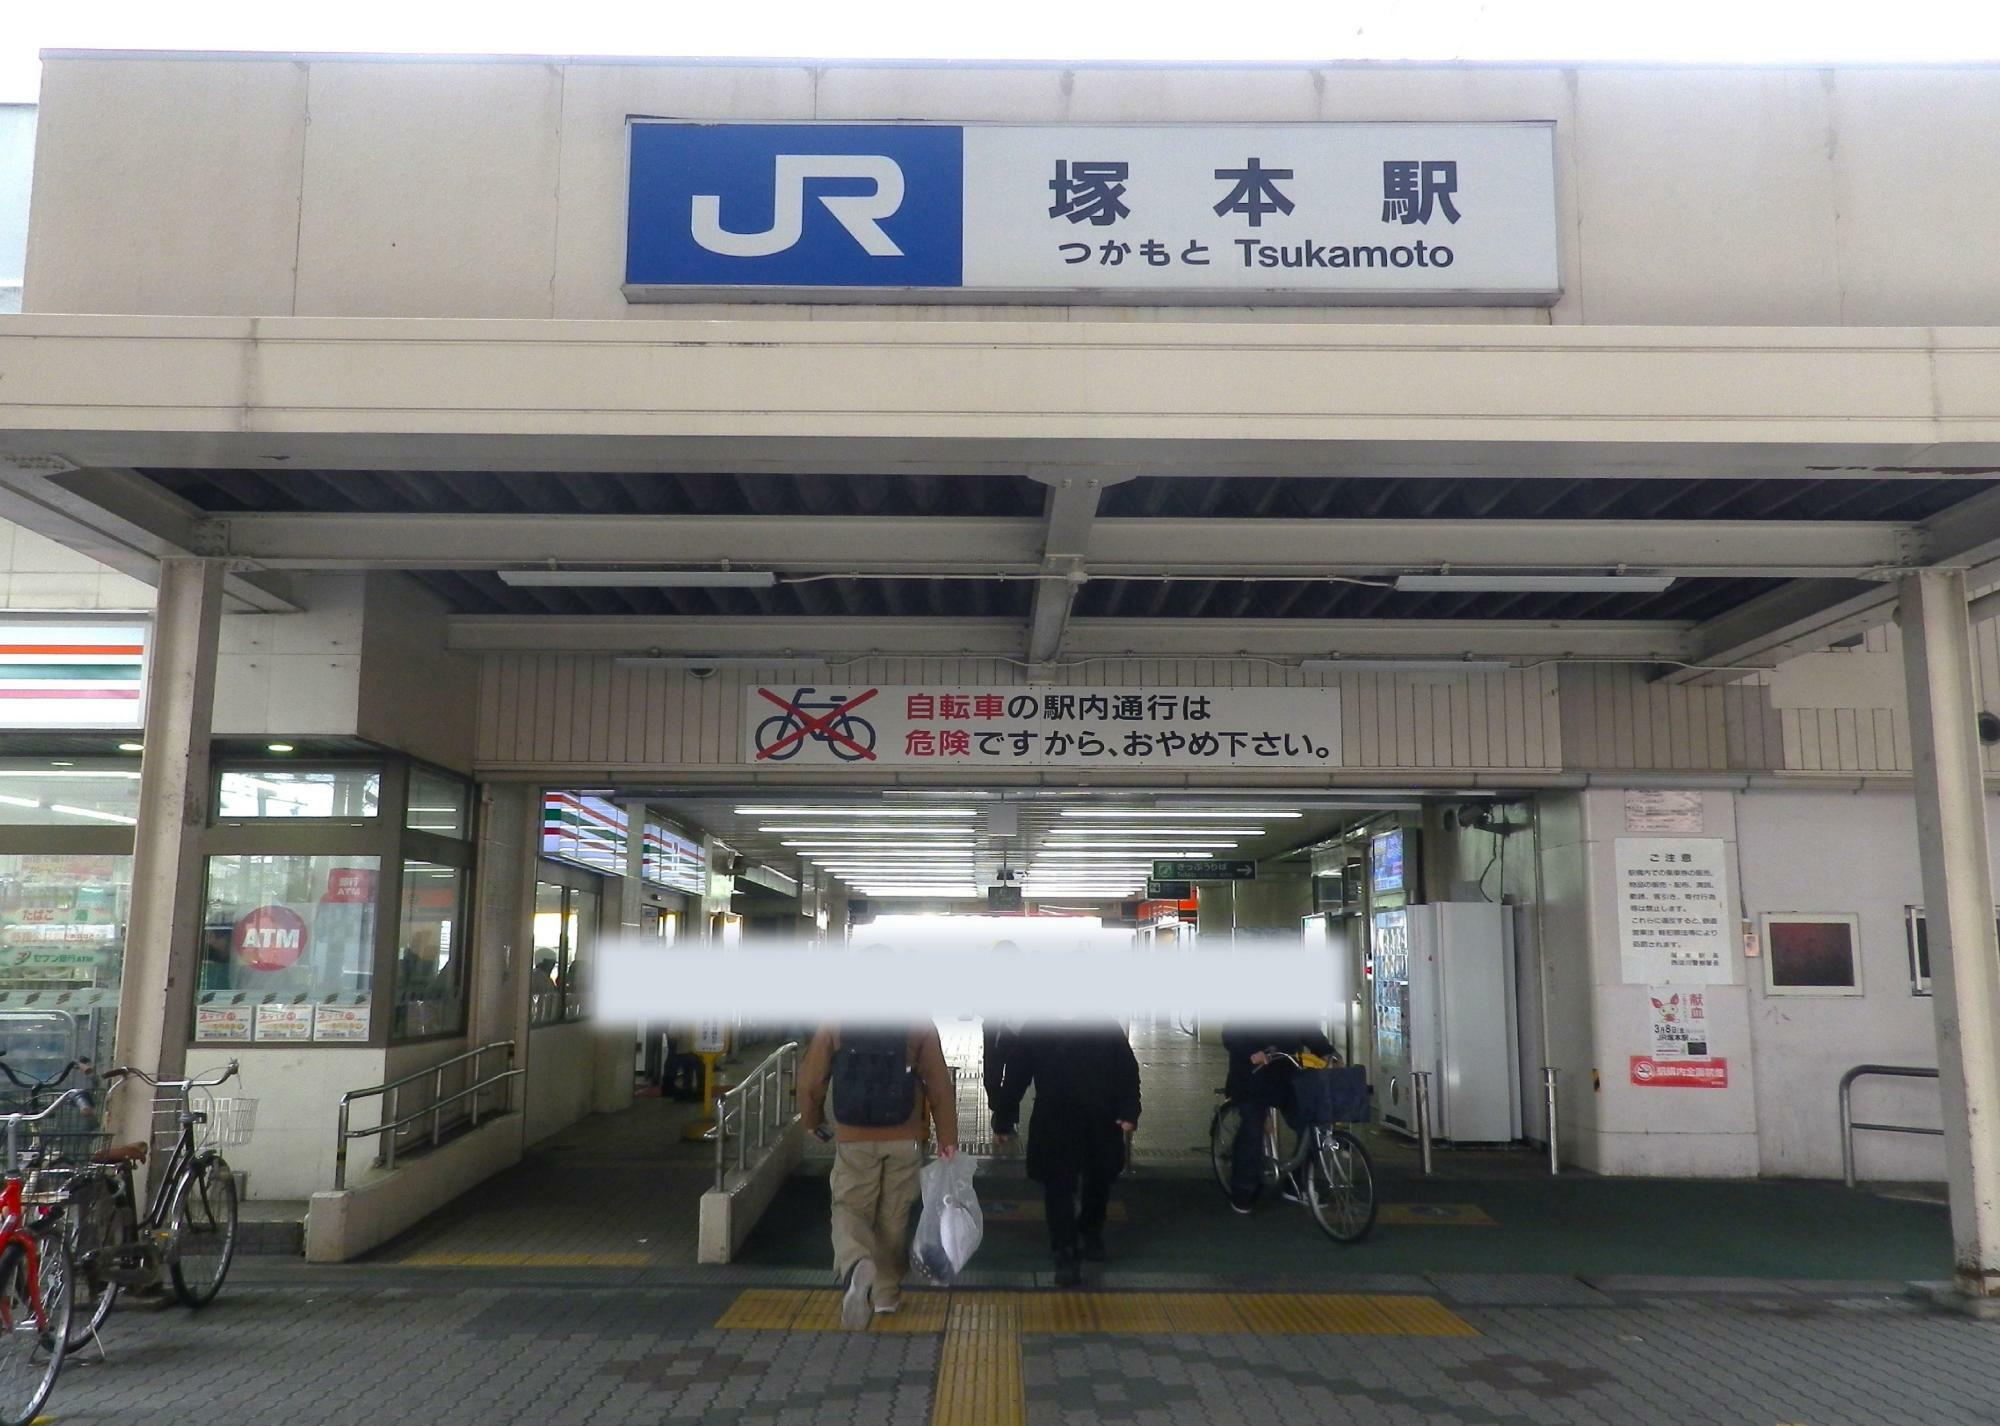 JR塚本駅西口。